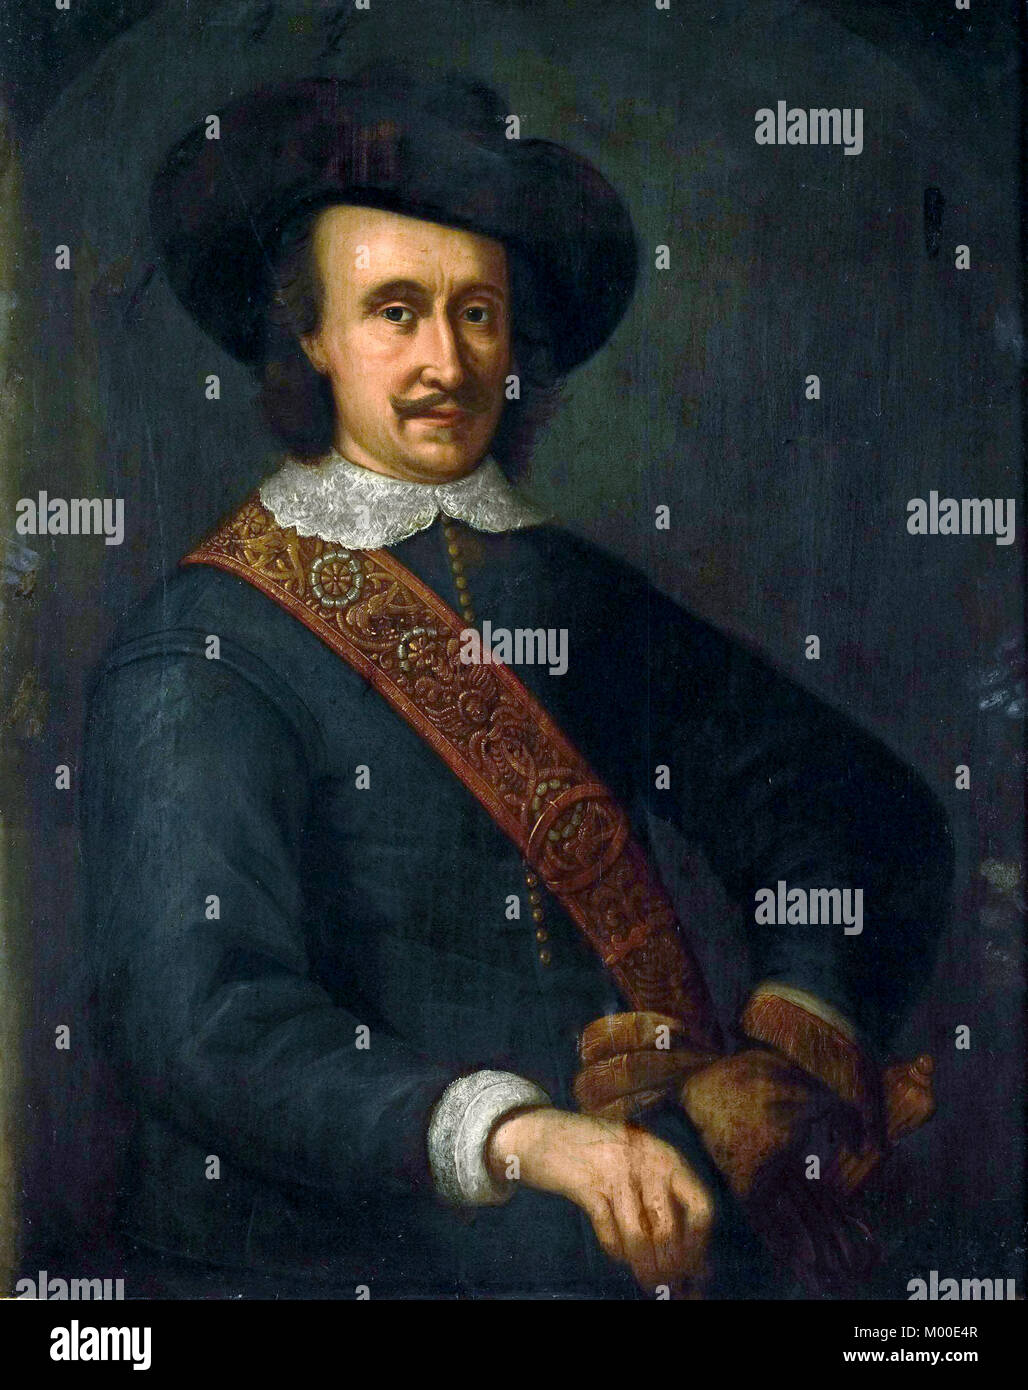 Cornelis van der Lijn, Gobernador General de las Indias Orientales Holandesas de 1645 a 1650 Foto de stock